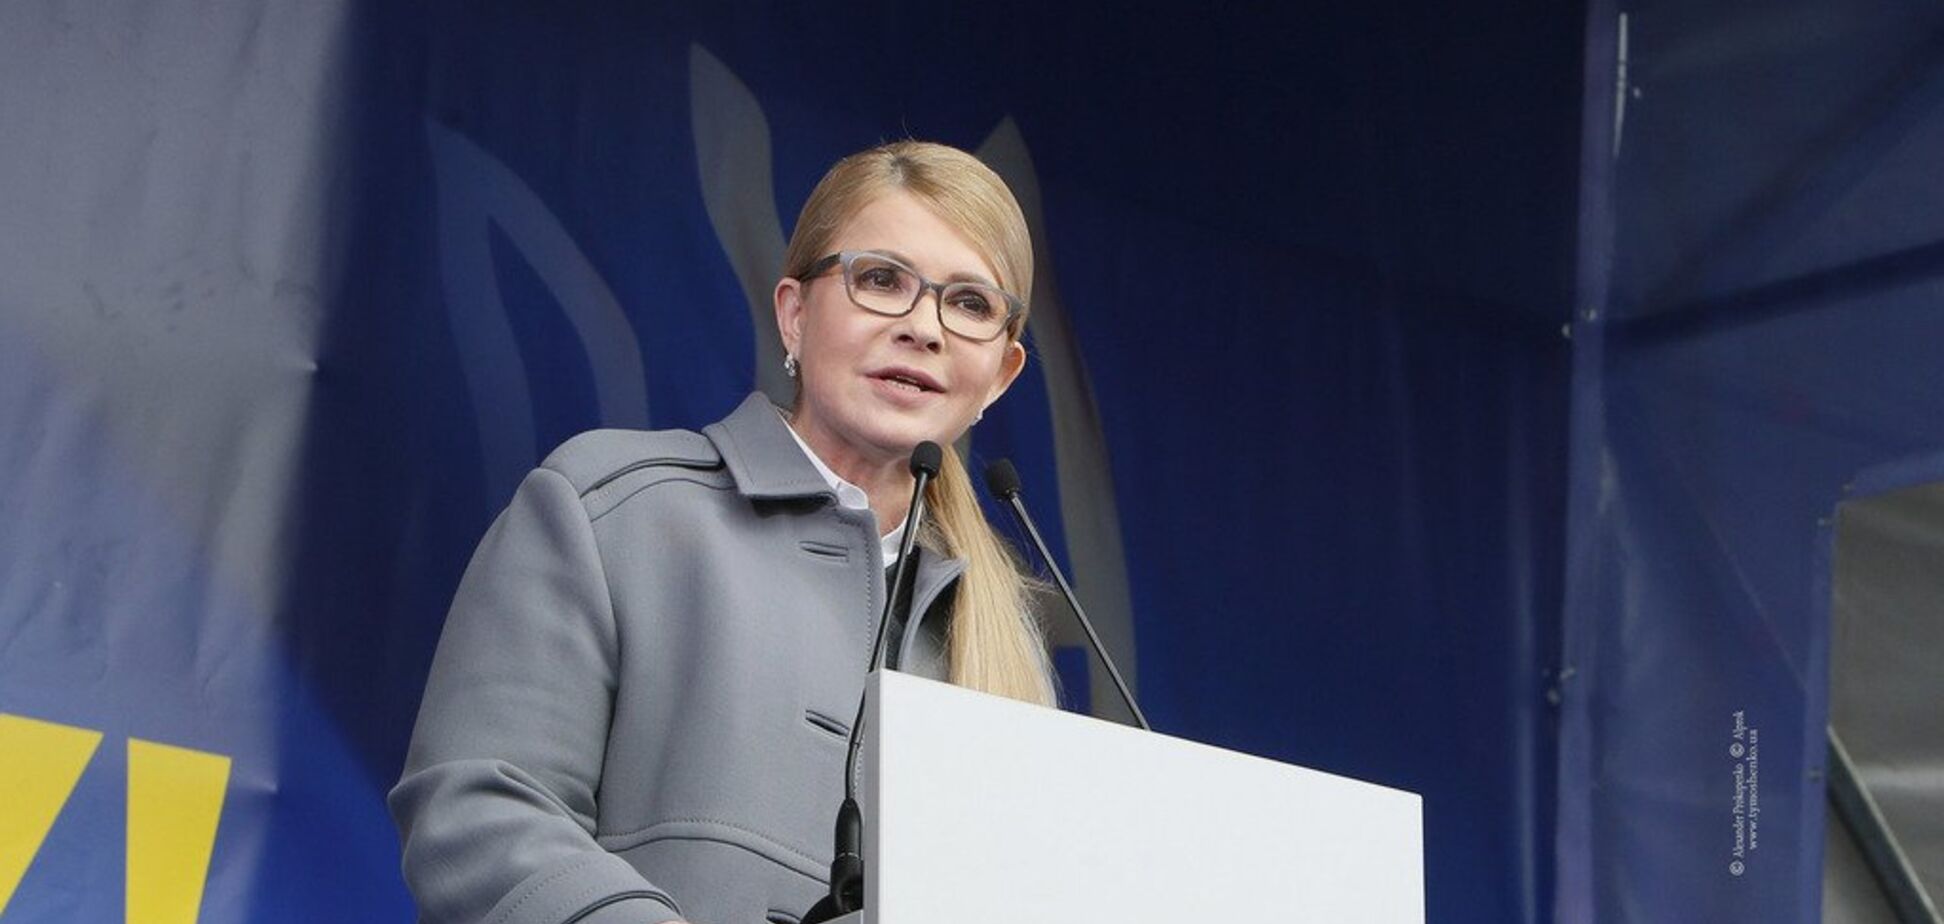 Тимошенко закликала українців об’єднатися заради миру та відродження України